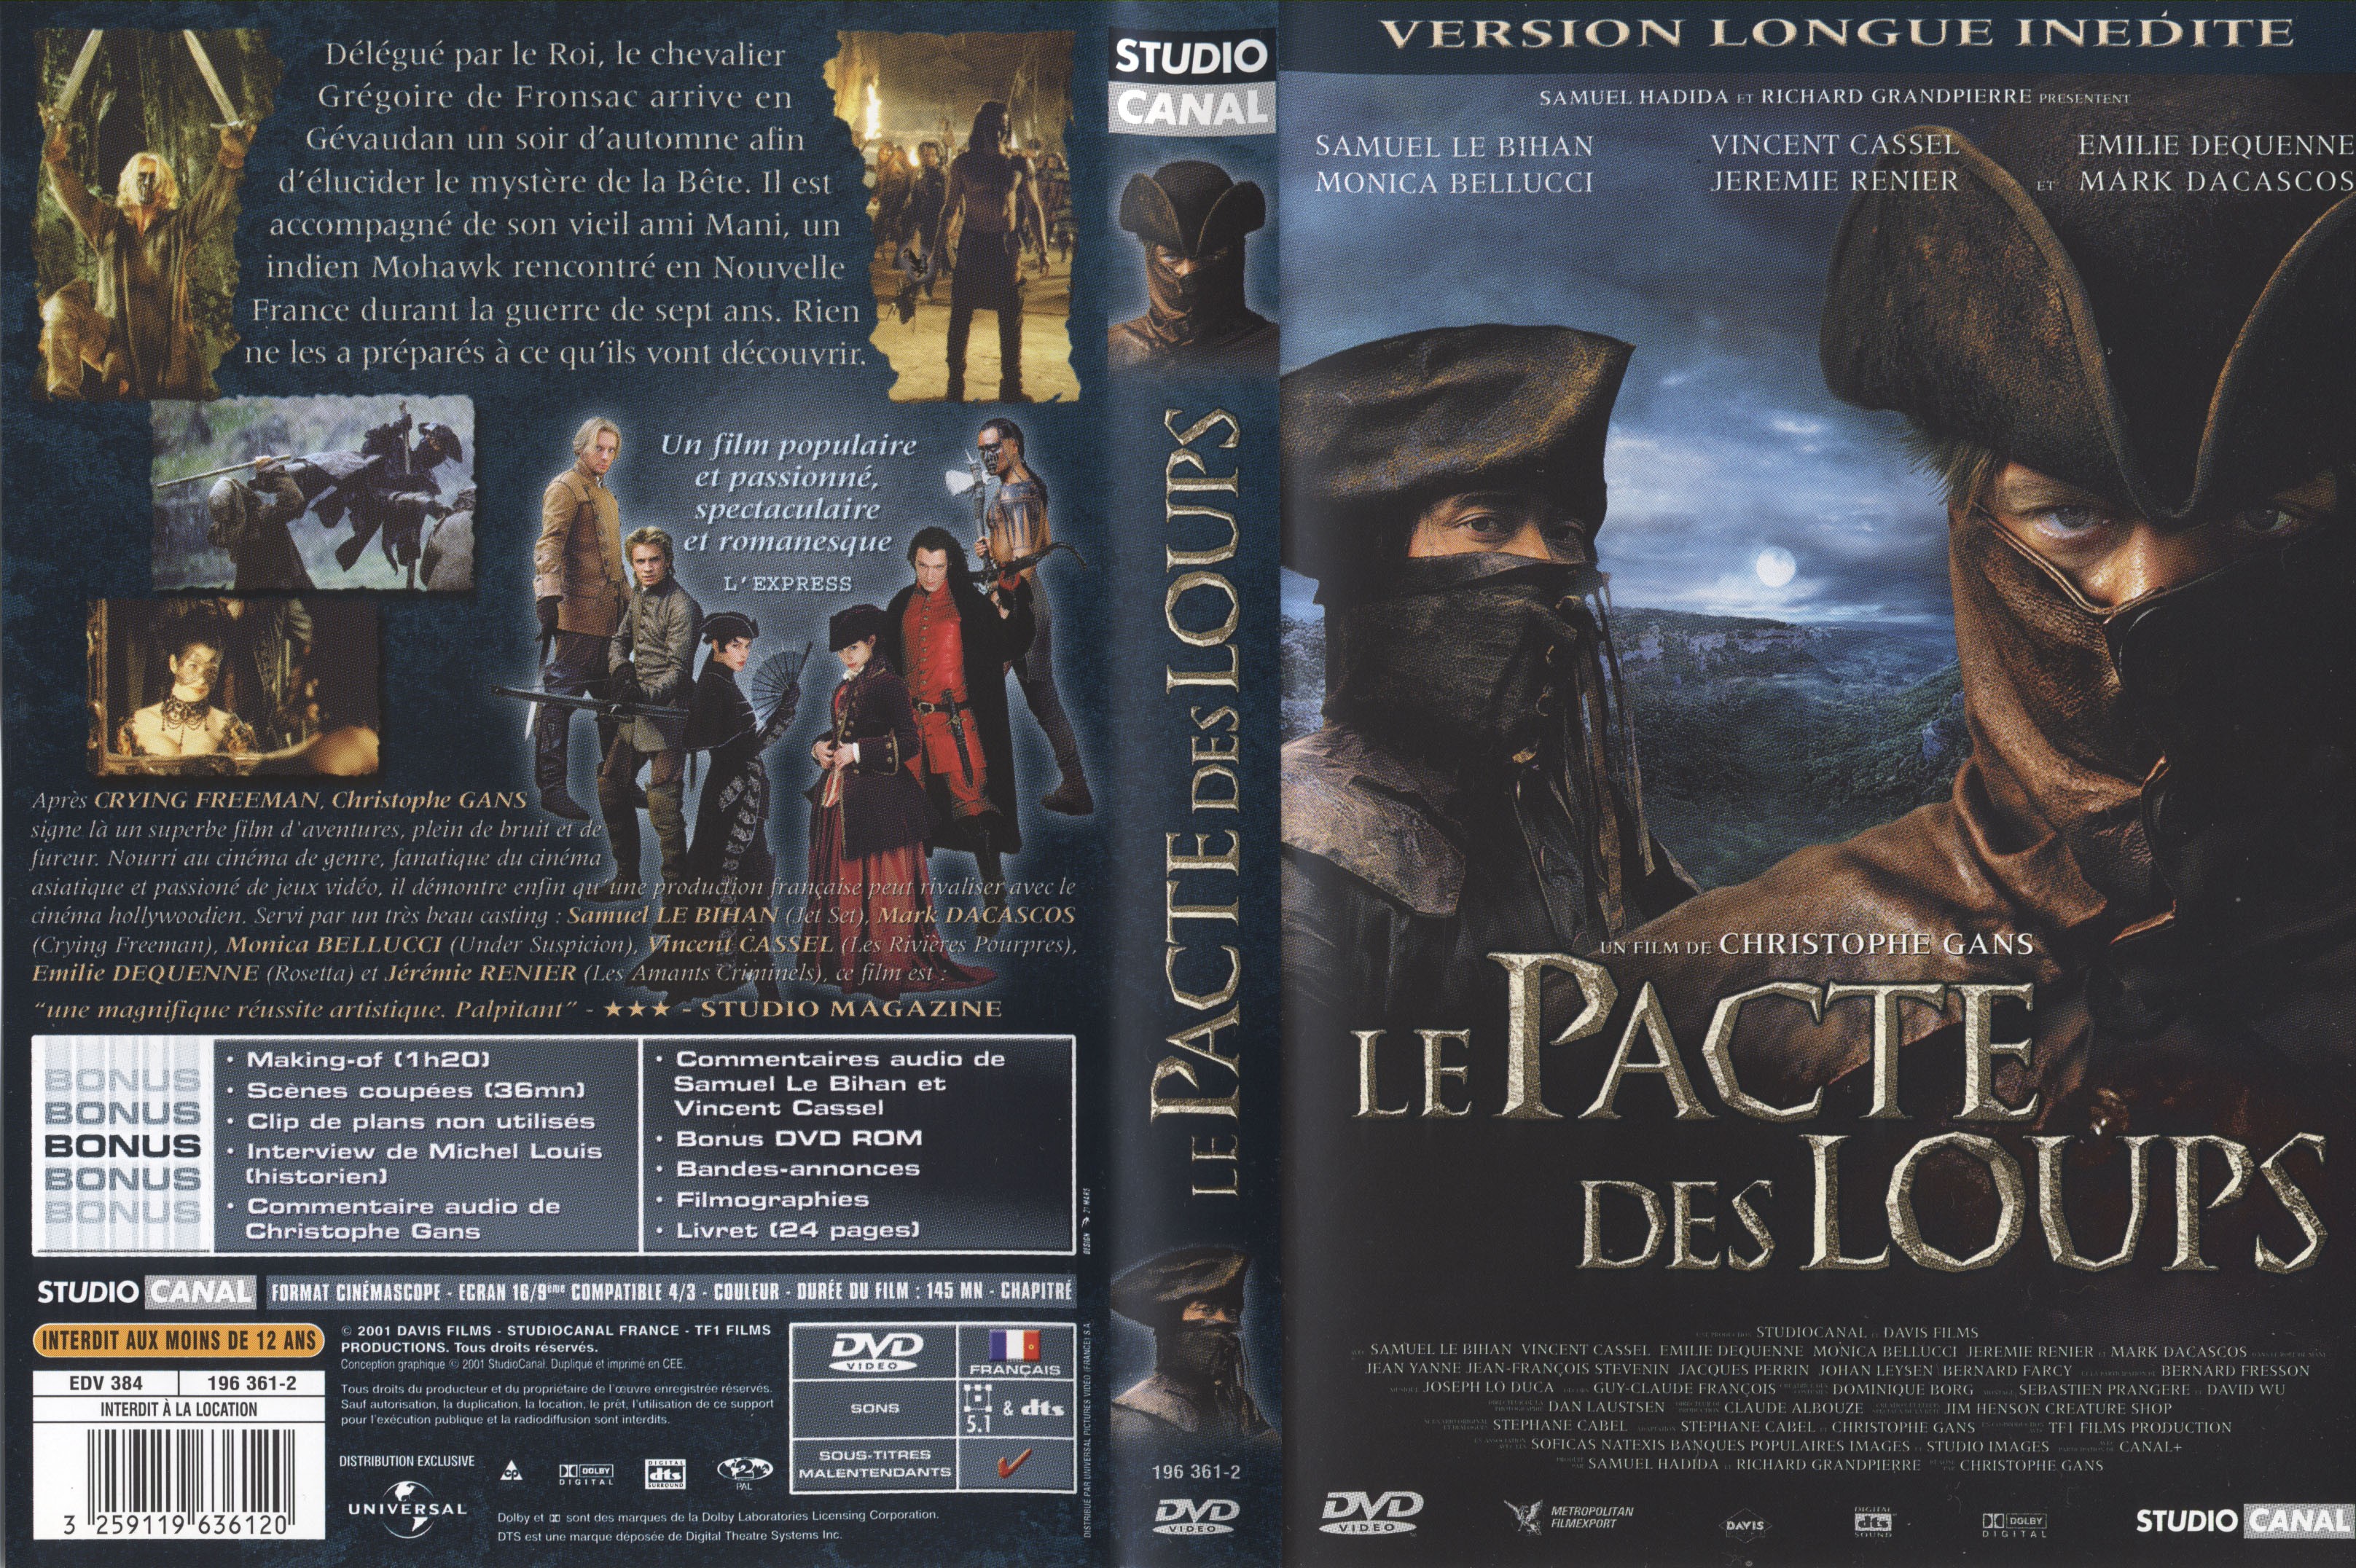 Jaquette DVD Le pacte des loups v2